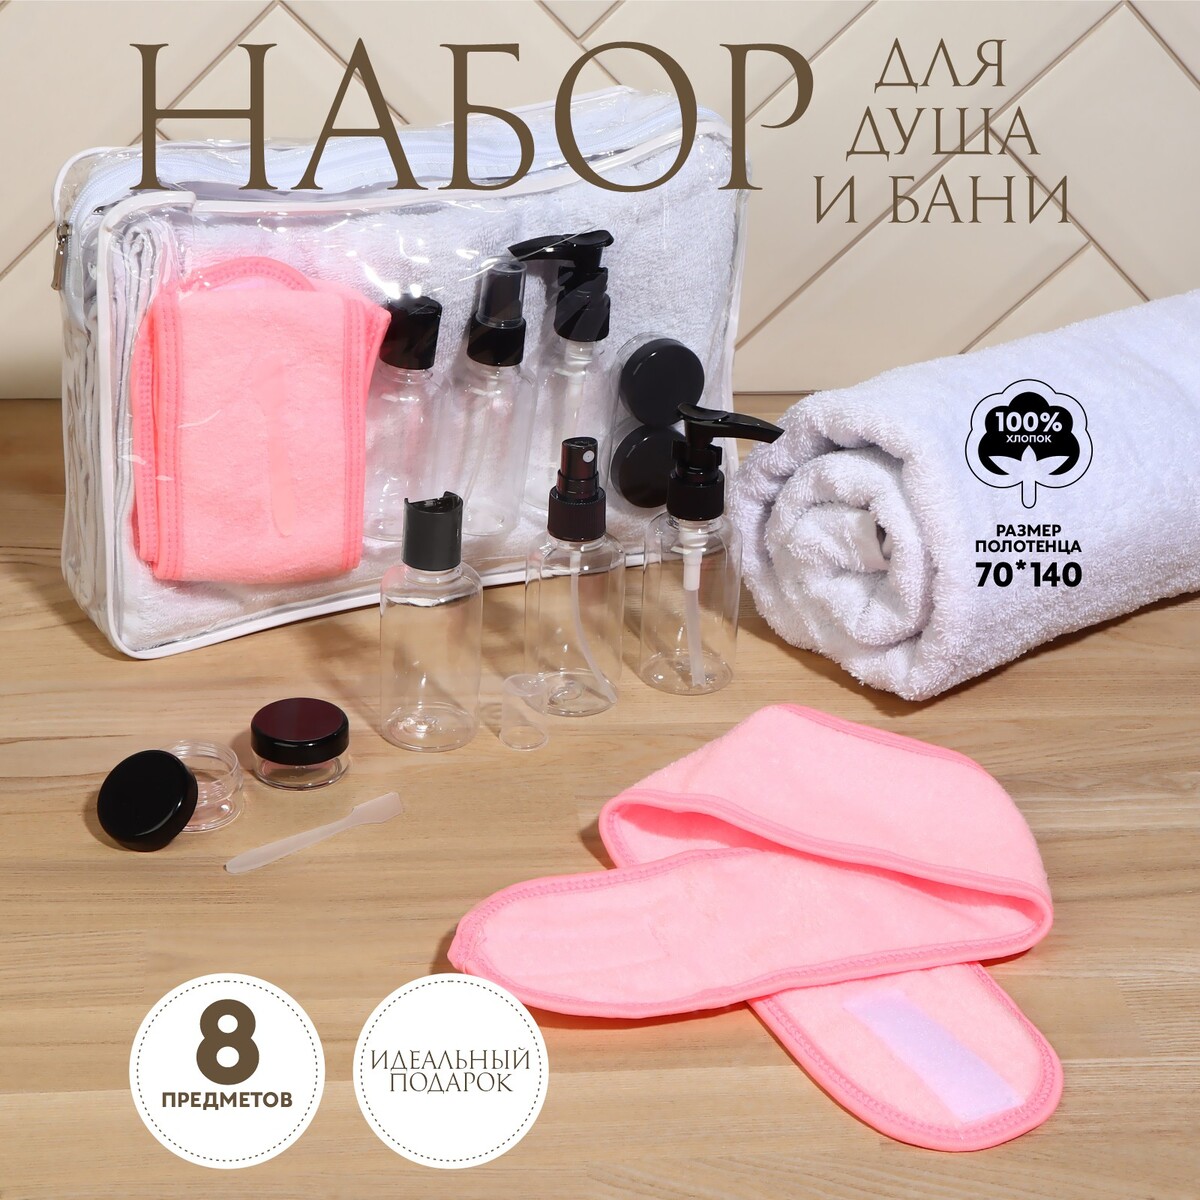 Набор банный, в косметичке, 8 предметов (полотенце 70 × 140 см, бутылочки 3 шт, баночки 2 шт, повязка на голову, лопатка) , цвет белый/розовый набор подарочный кухонное полотенце